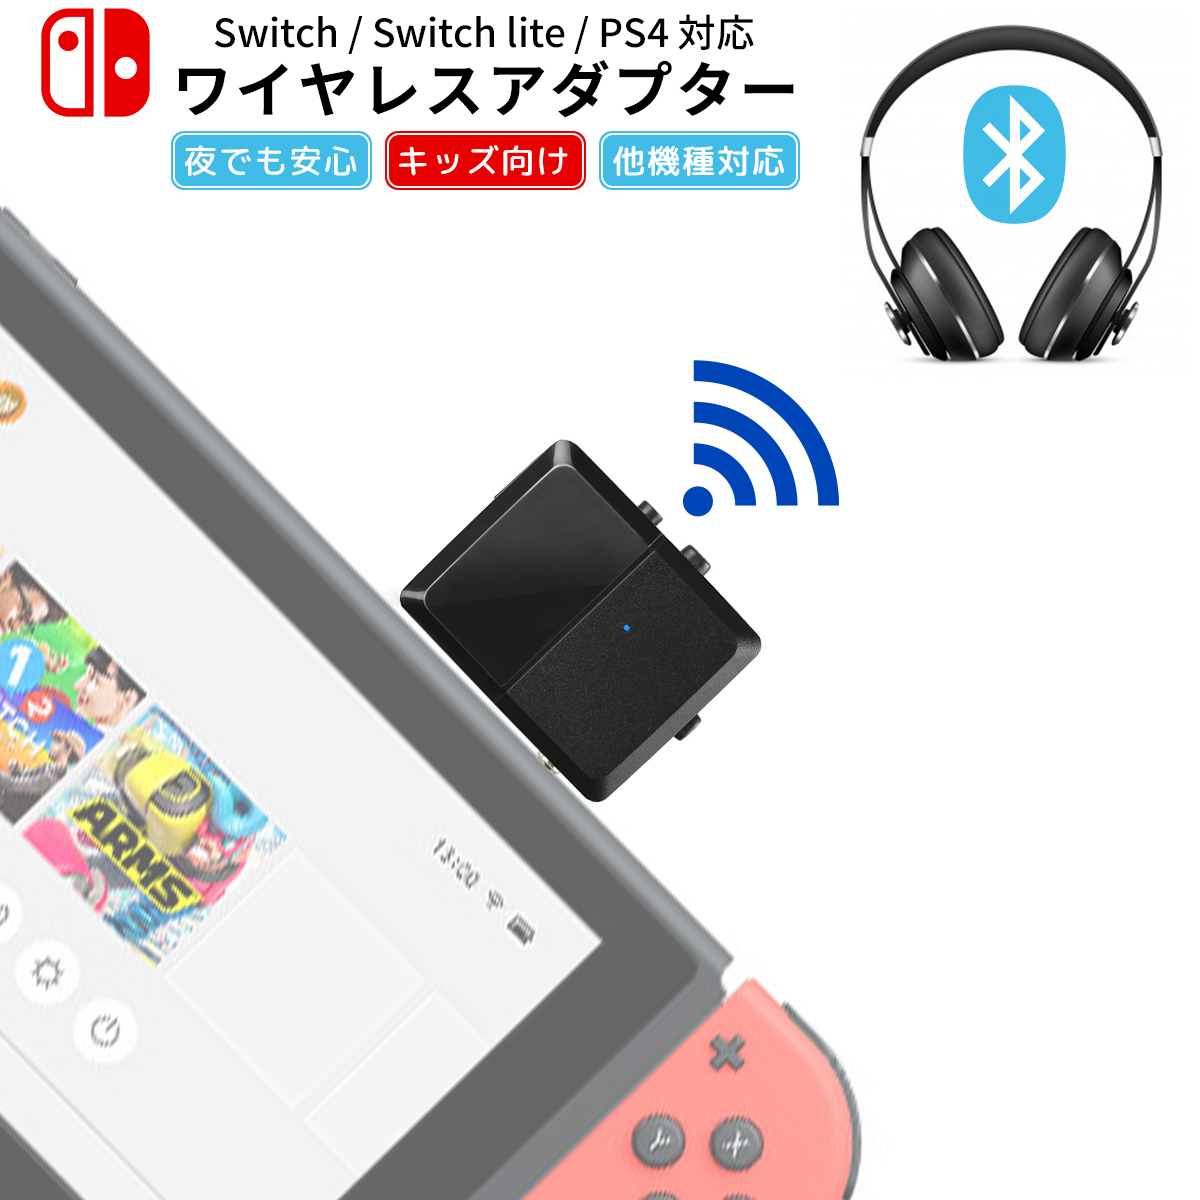 楽天市場 Nintendo Switch Switch Lite スイッチ Ps4 対応 オーディオアダプター ワイヤレス ブルートゥース Bluetooth ワイヤレスレシーバー ヘッドホン イヤホン スピーカー 送料無料 マラソン 2倍 My Way Smart 楽天市場店